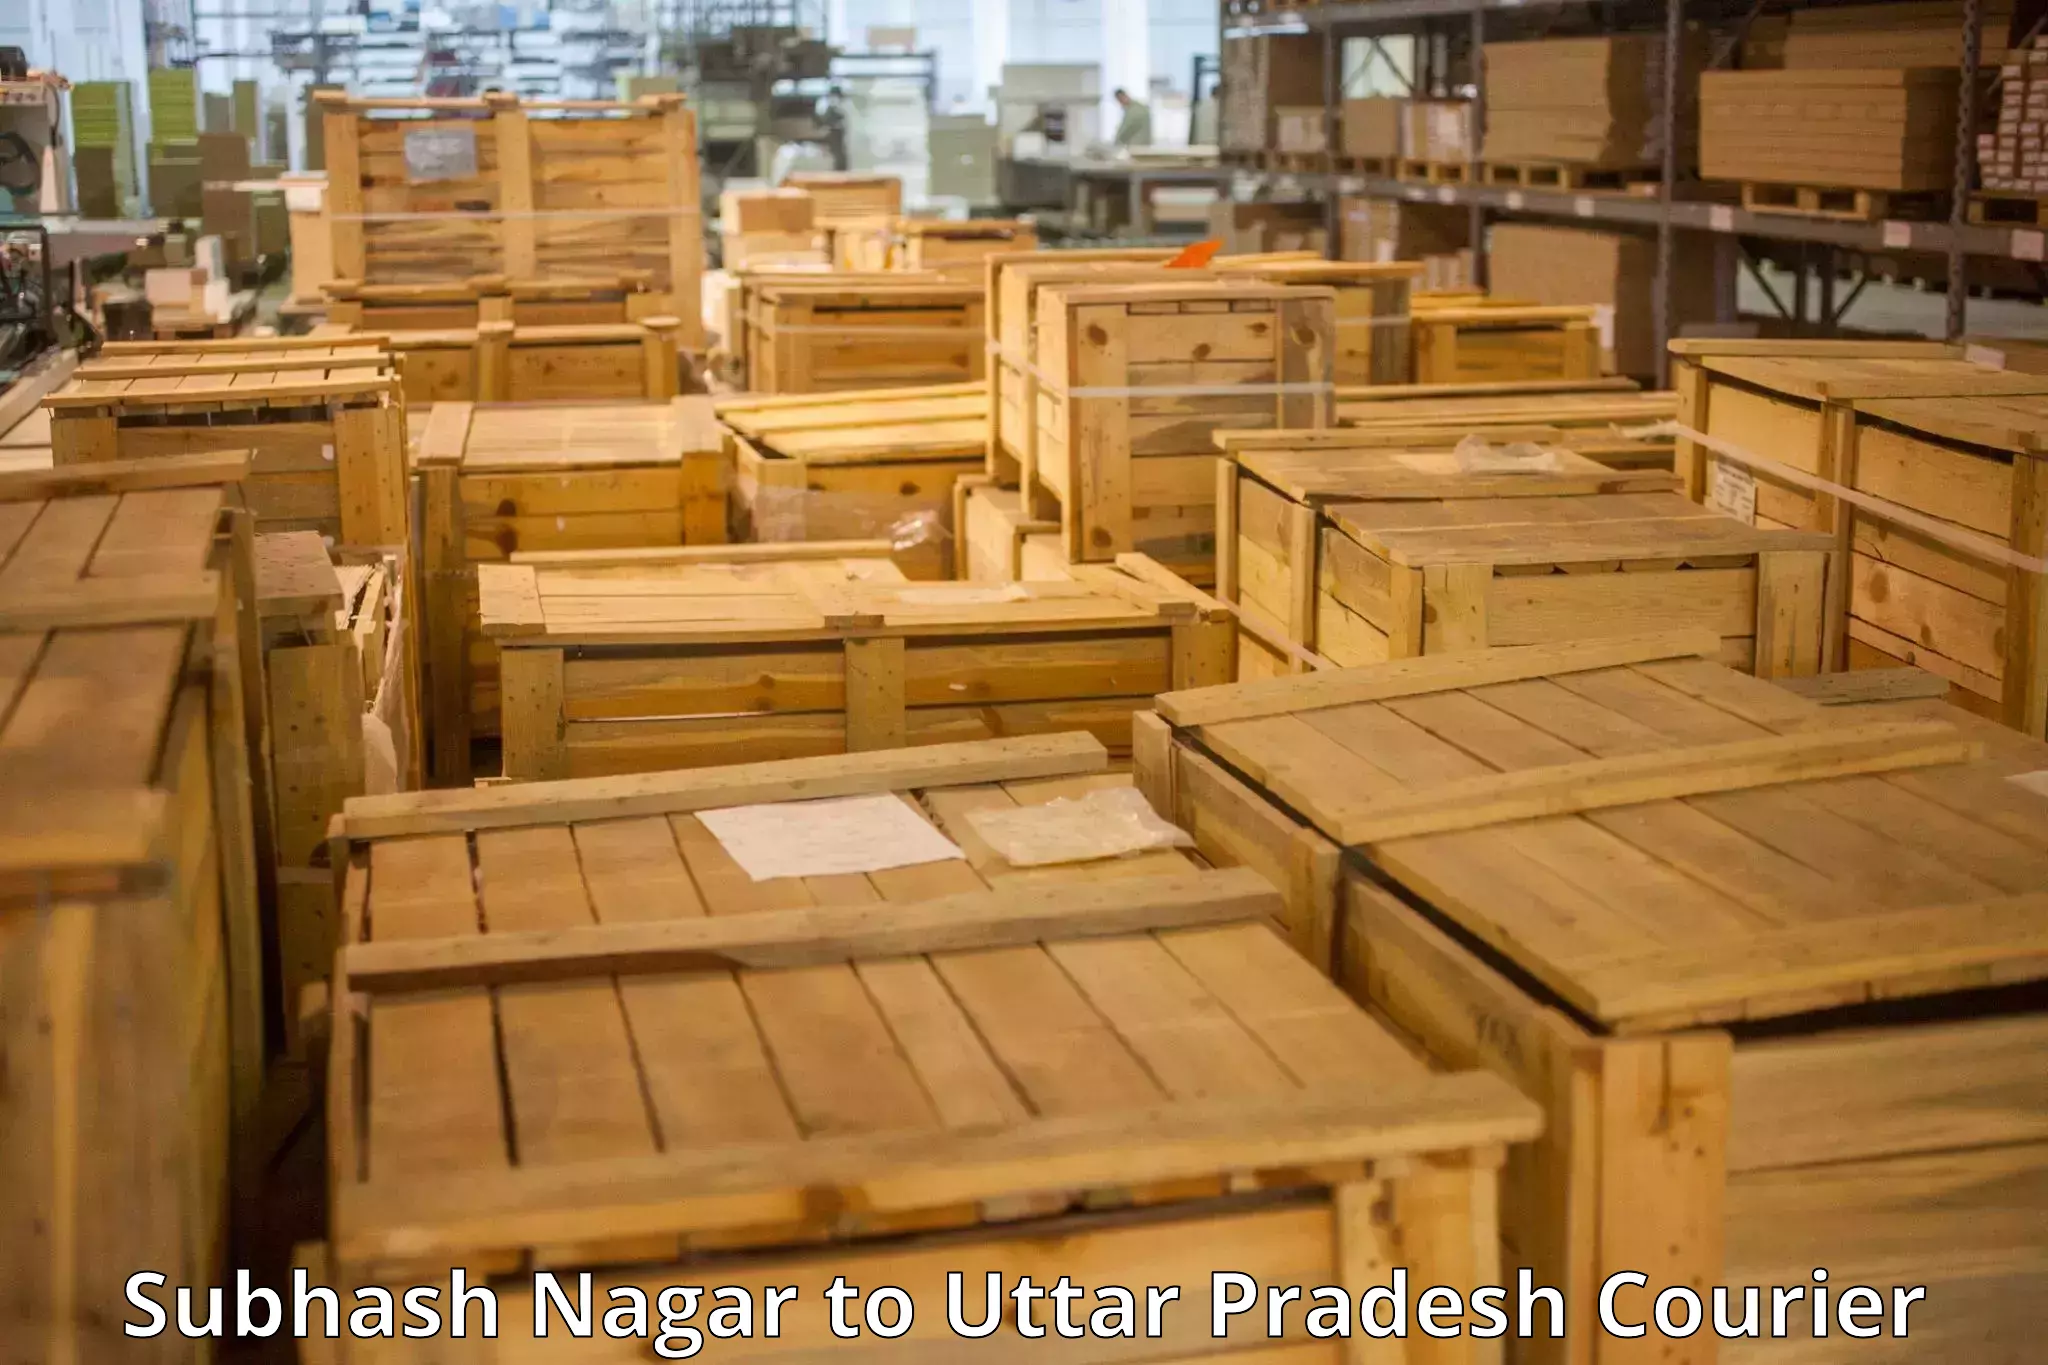 Baggage courier operations Subhash Nagar to Ambedkar Nagar